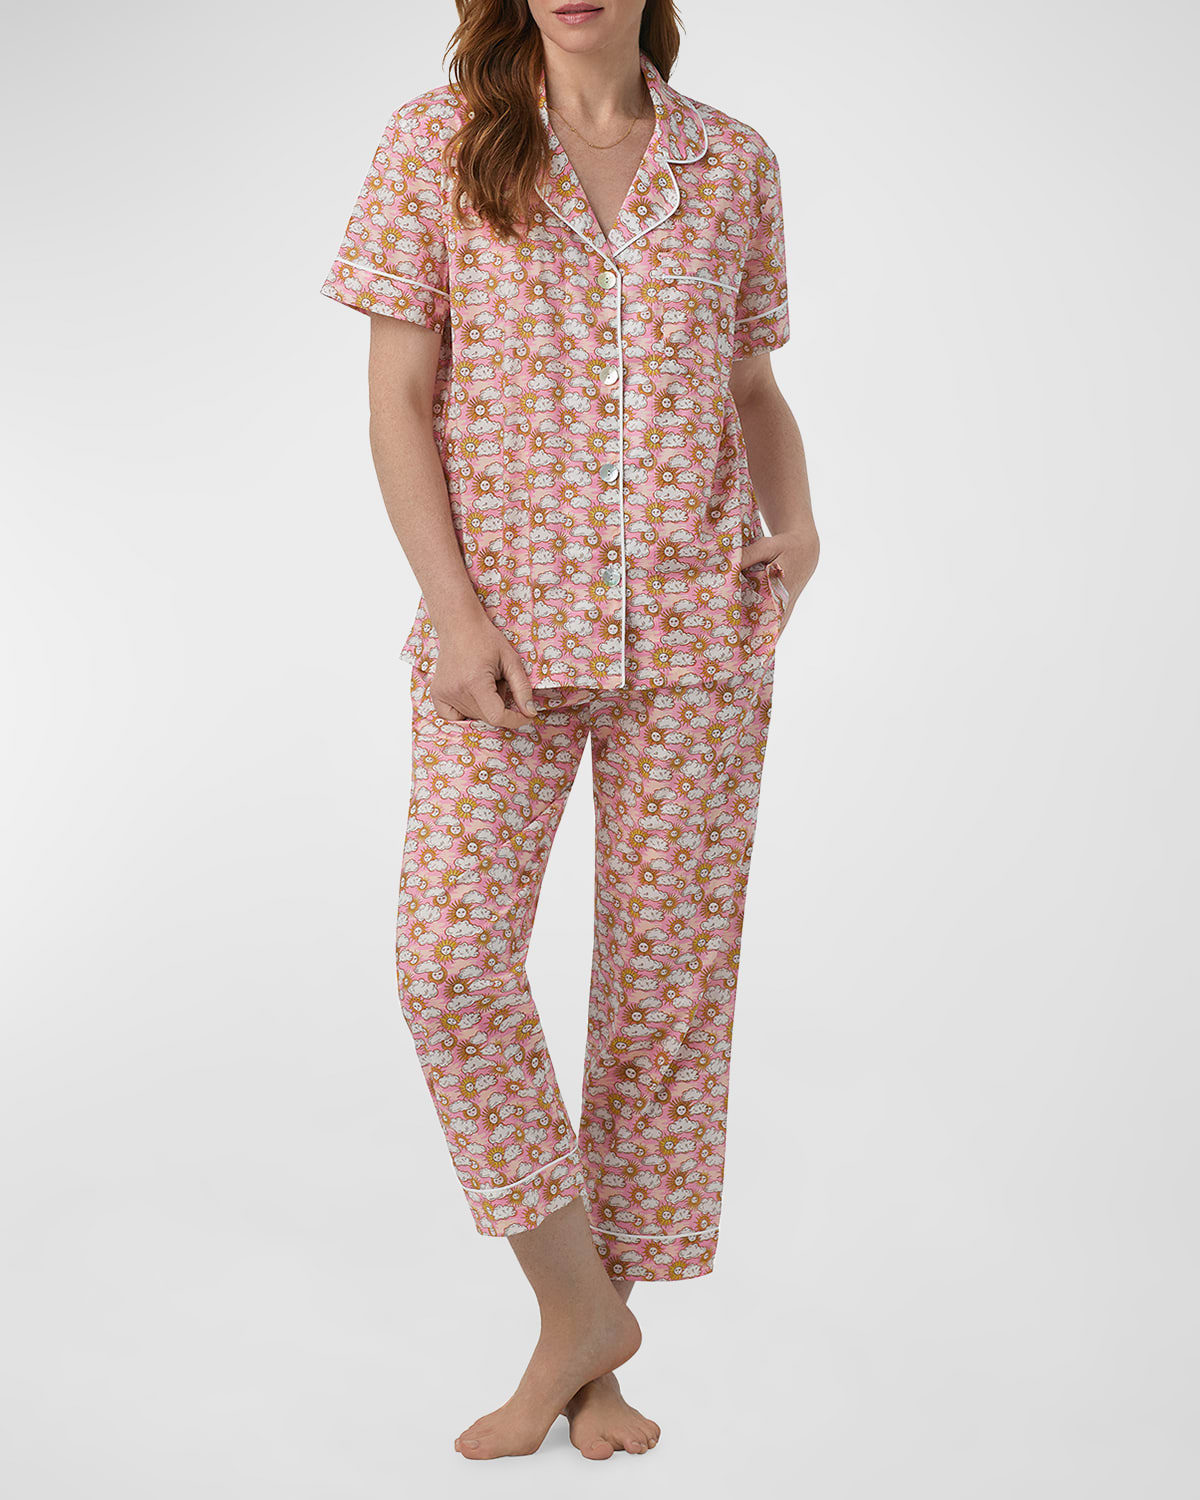 x Liberty of London Fabrics Cropped Pajama Set